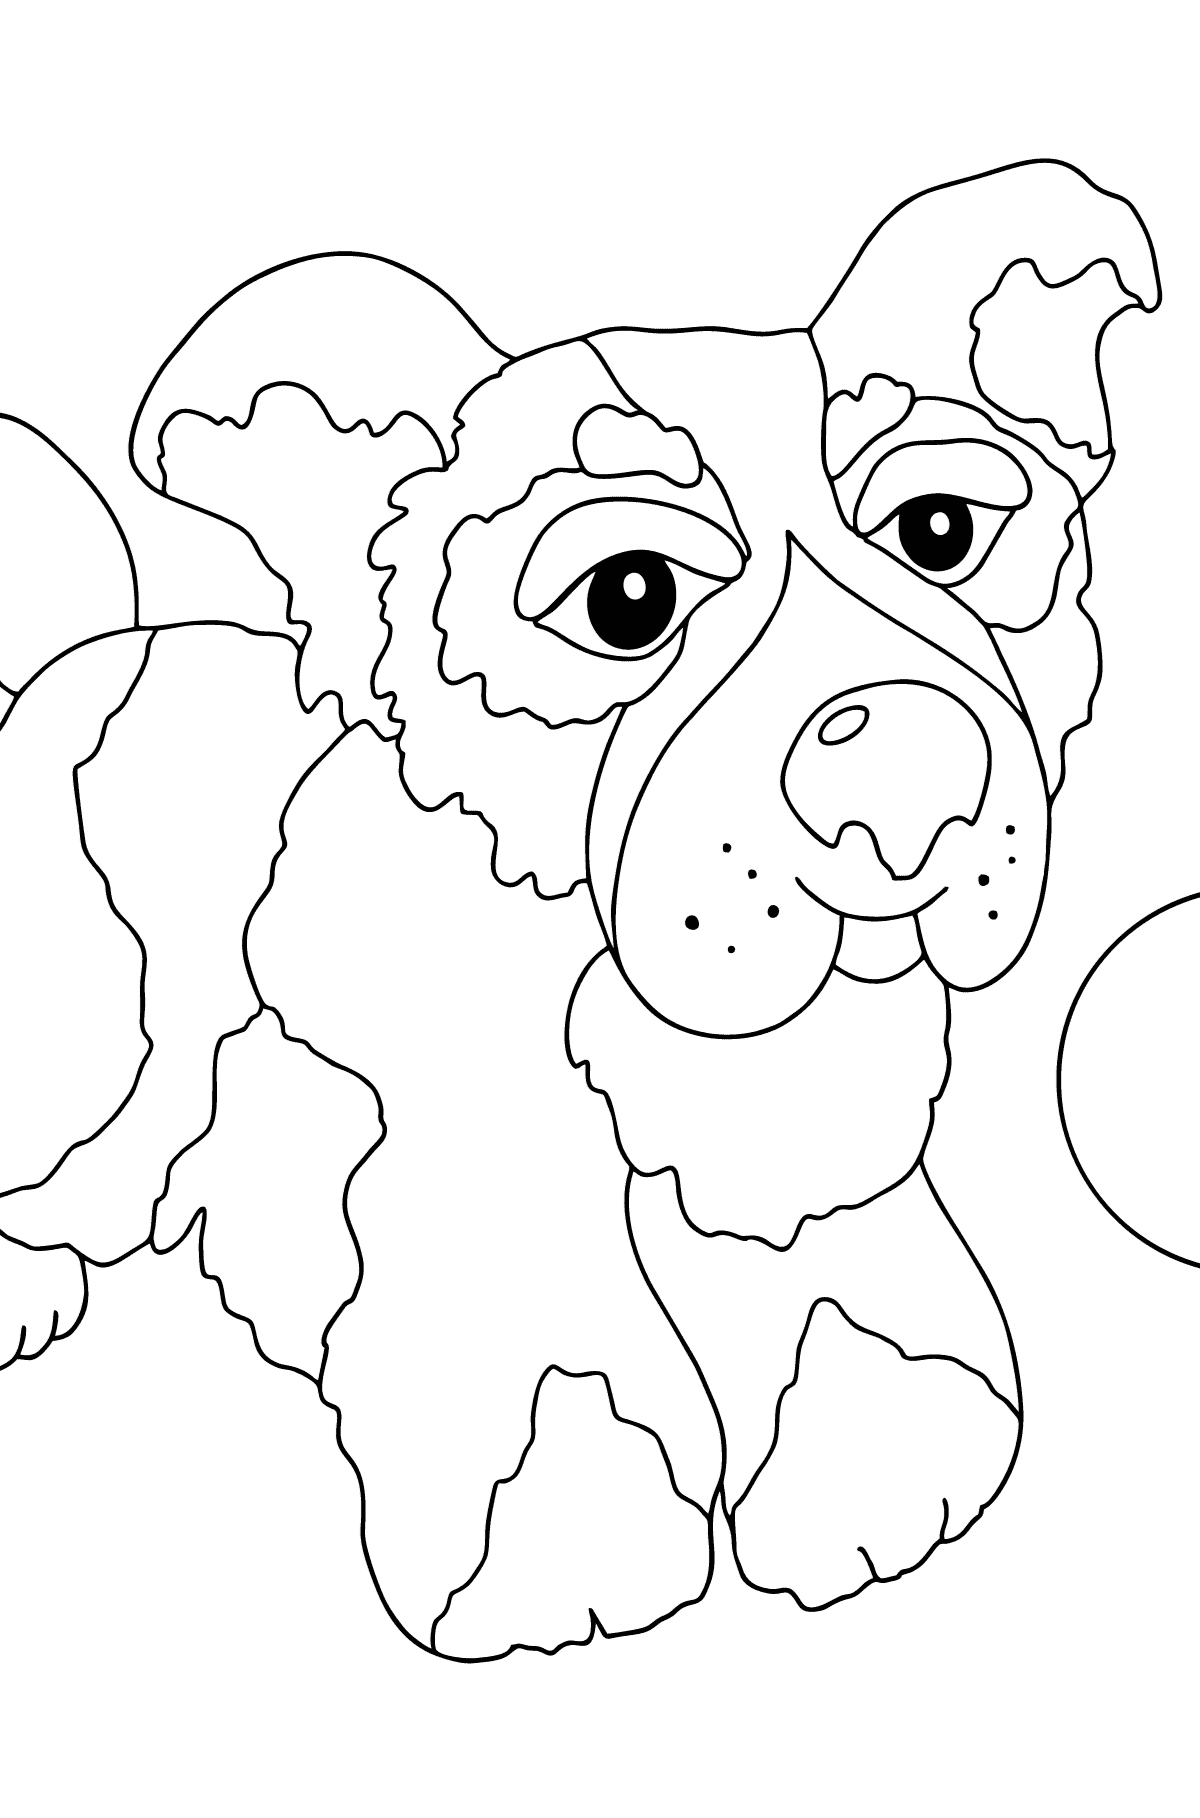 Desenho de cachorro fofo para colorir (fácil) - Imagens para Colorir para Crianças